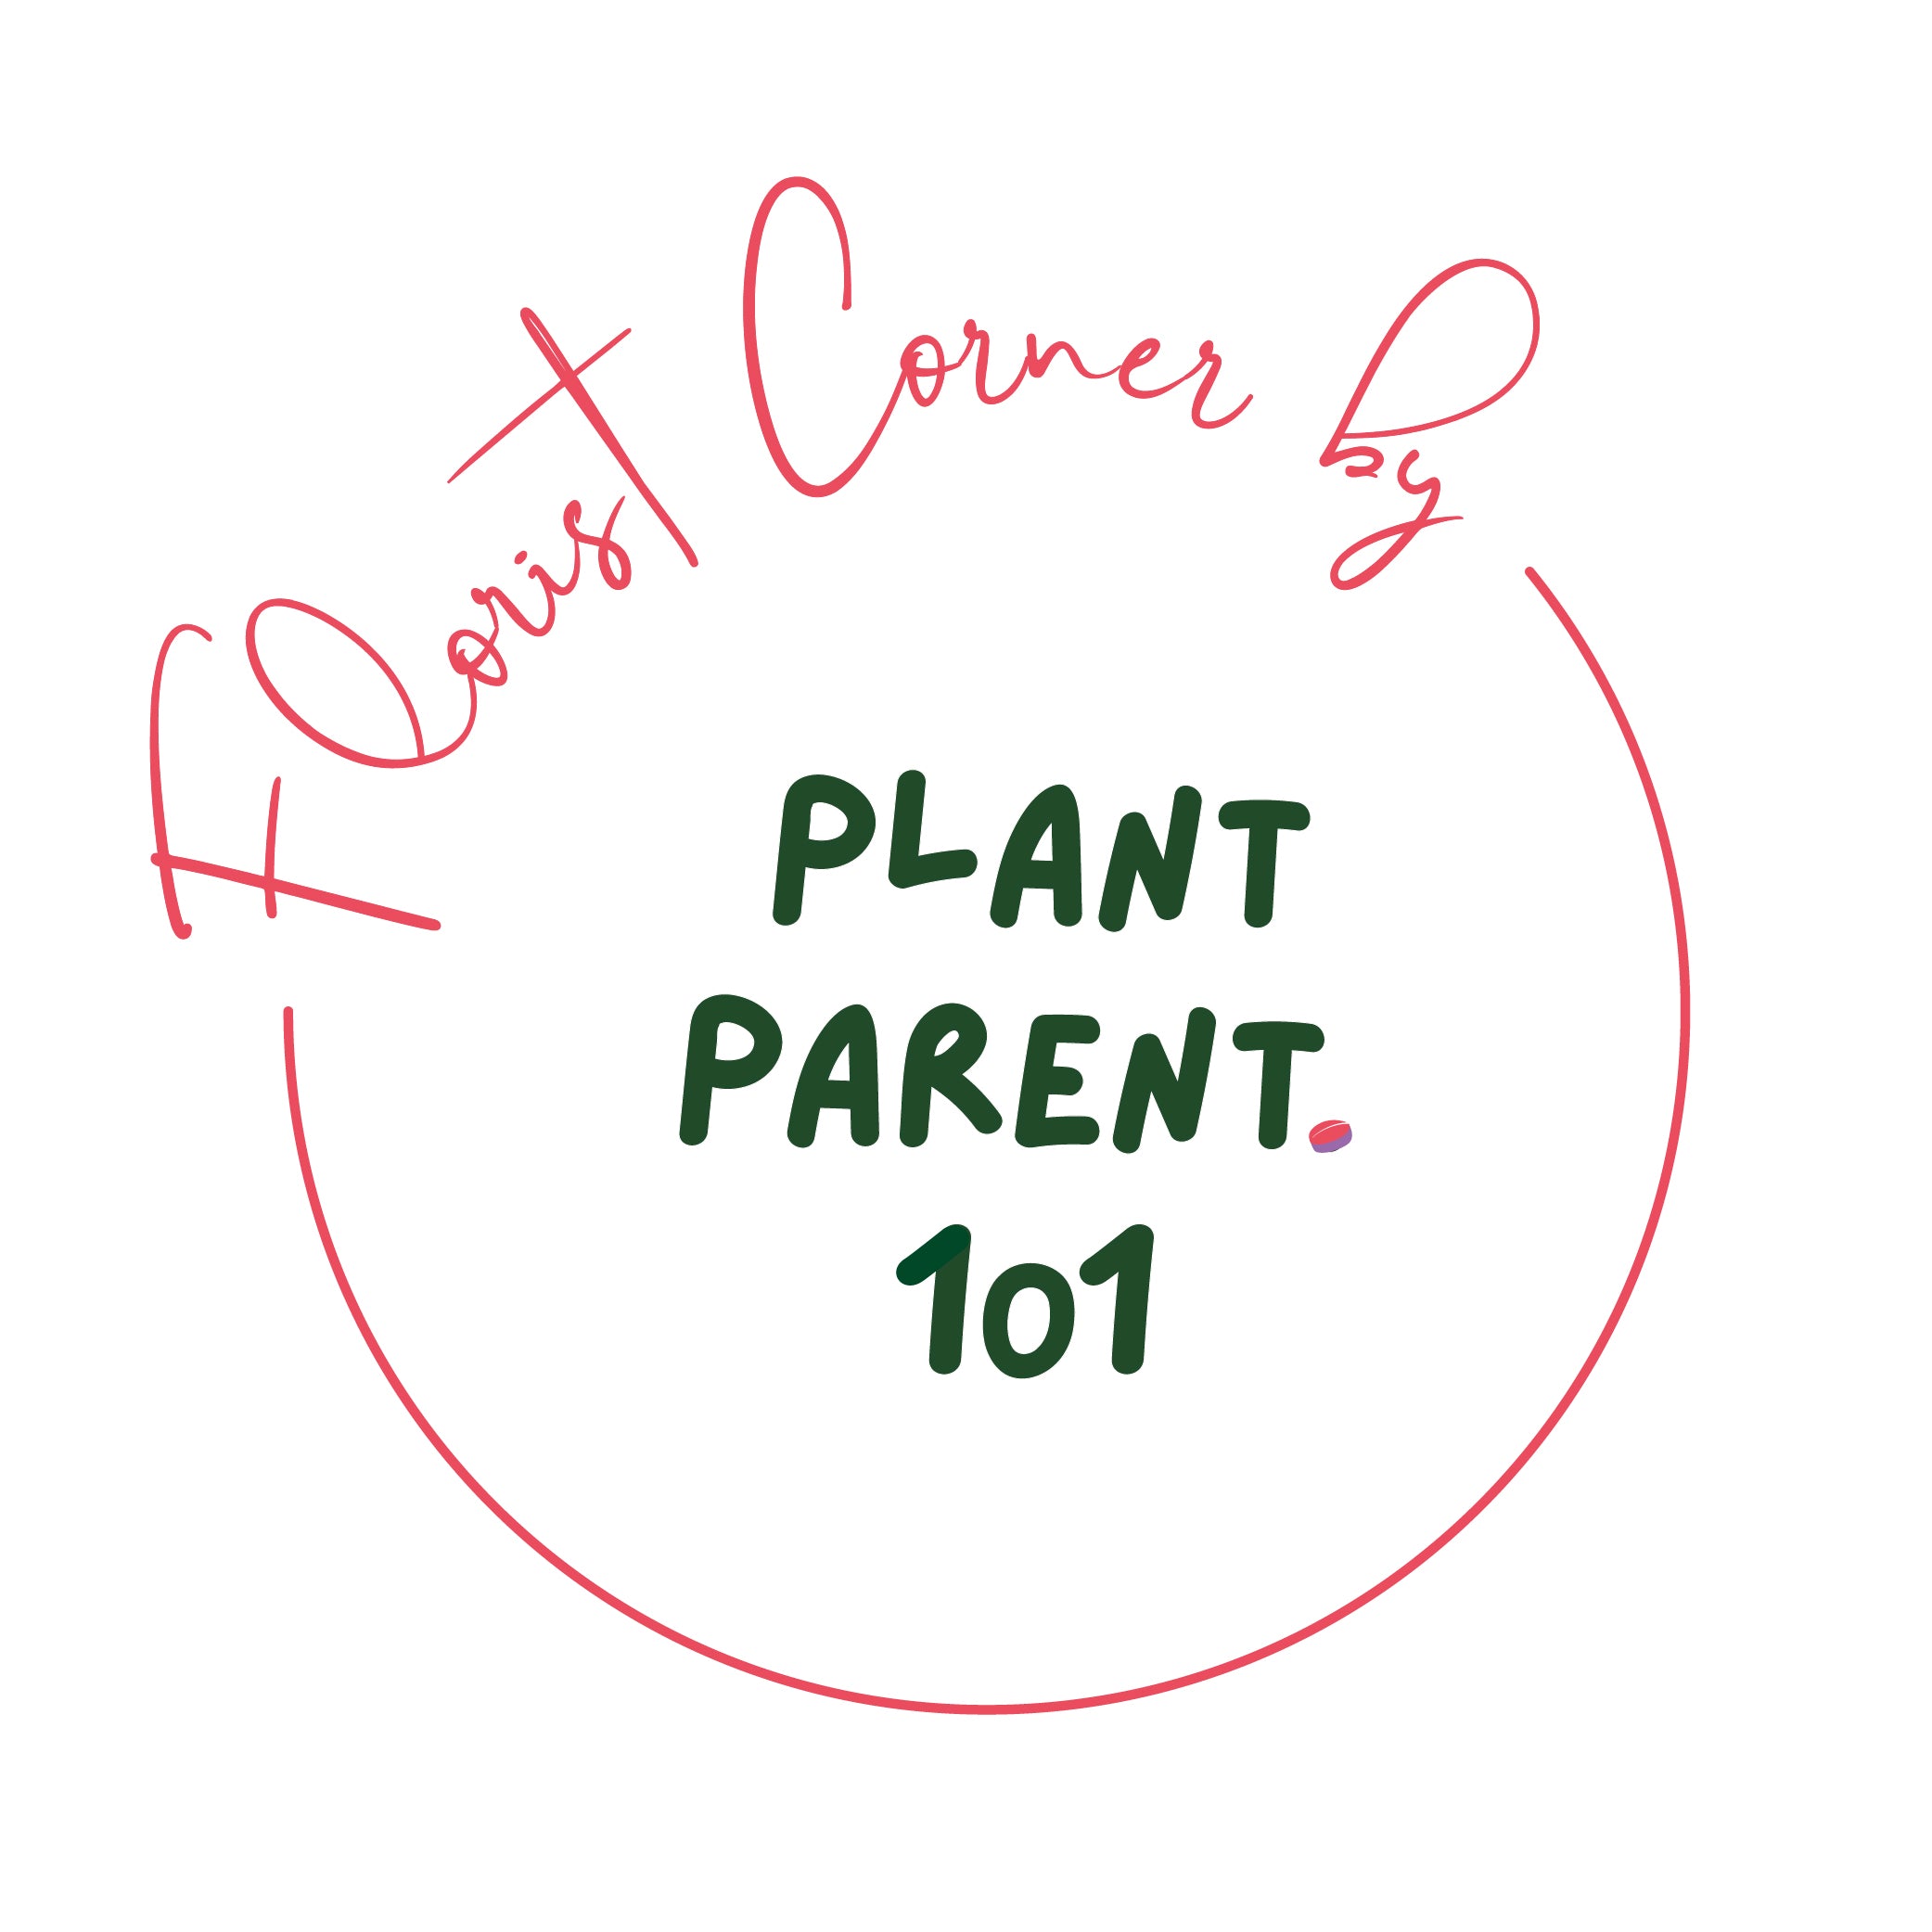 Plant Parent.101 